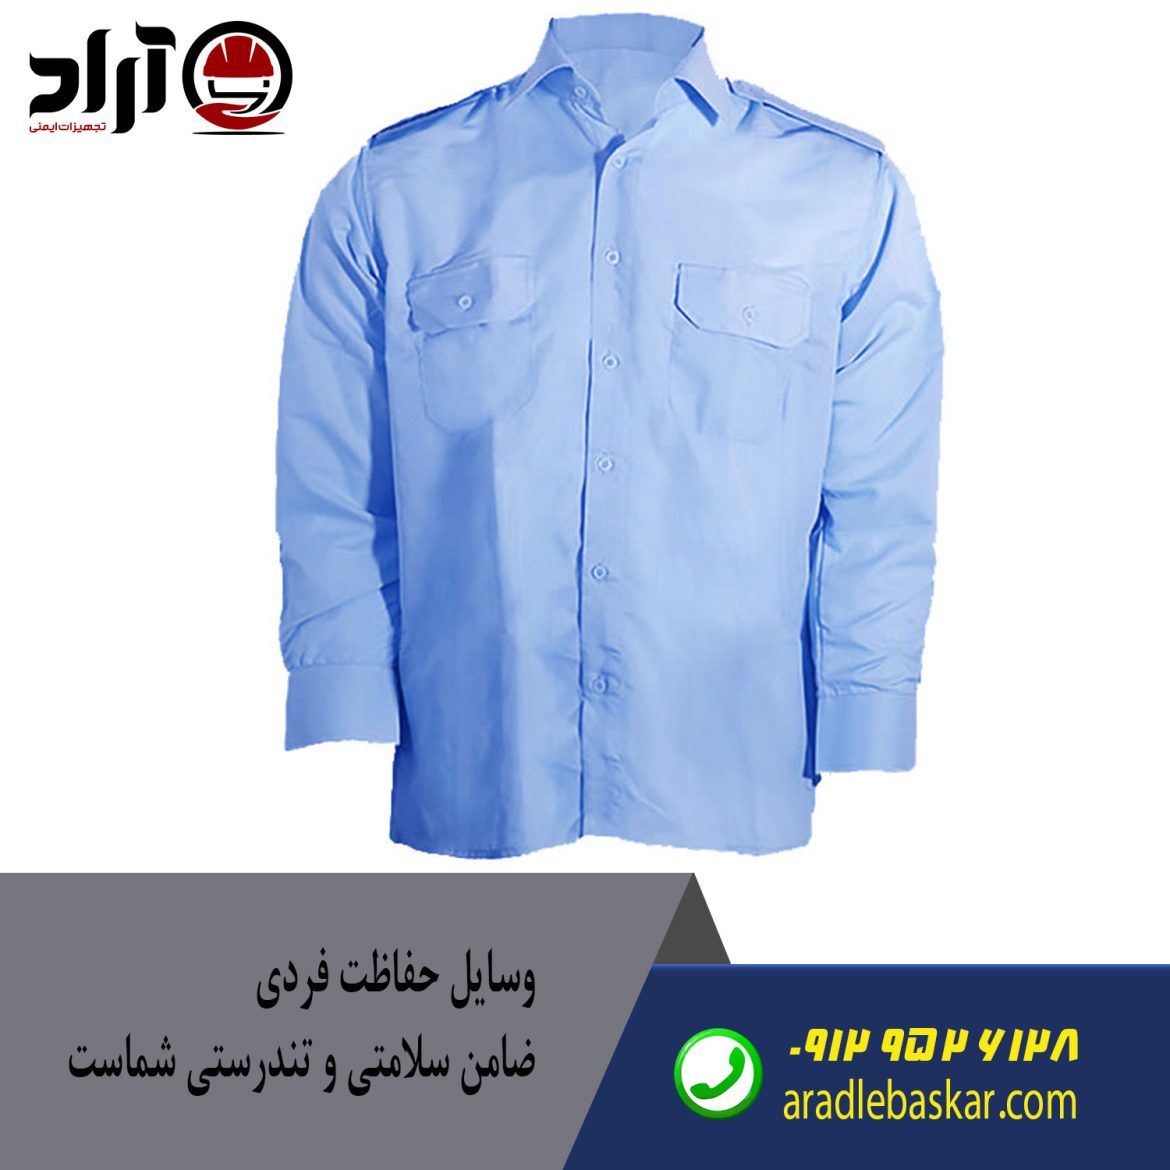 خرید لباس فرم حراست شرکت گاز + قیمت روز